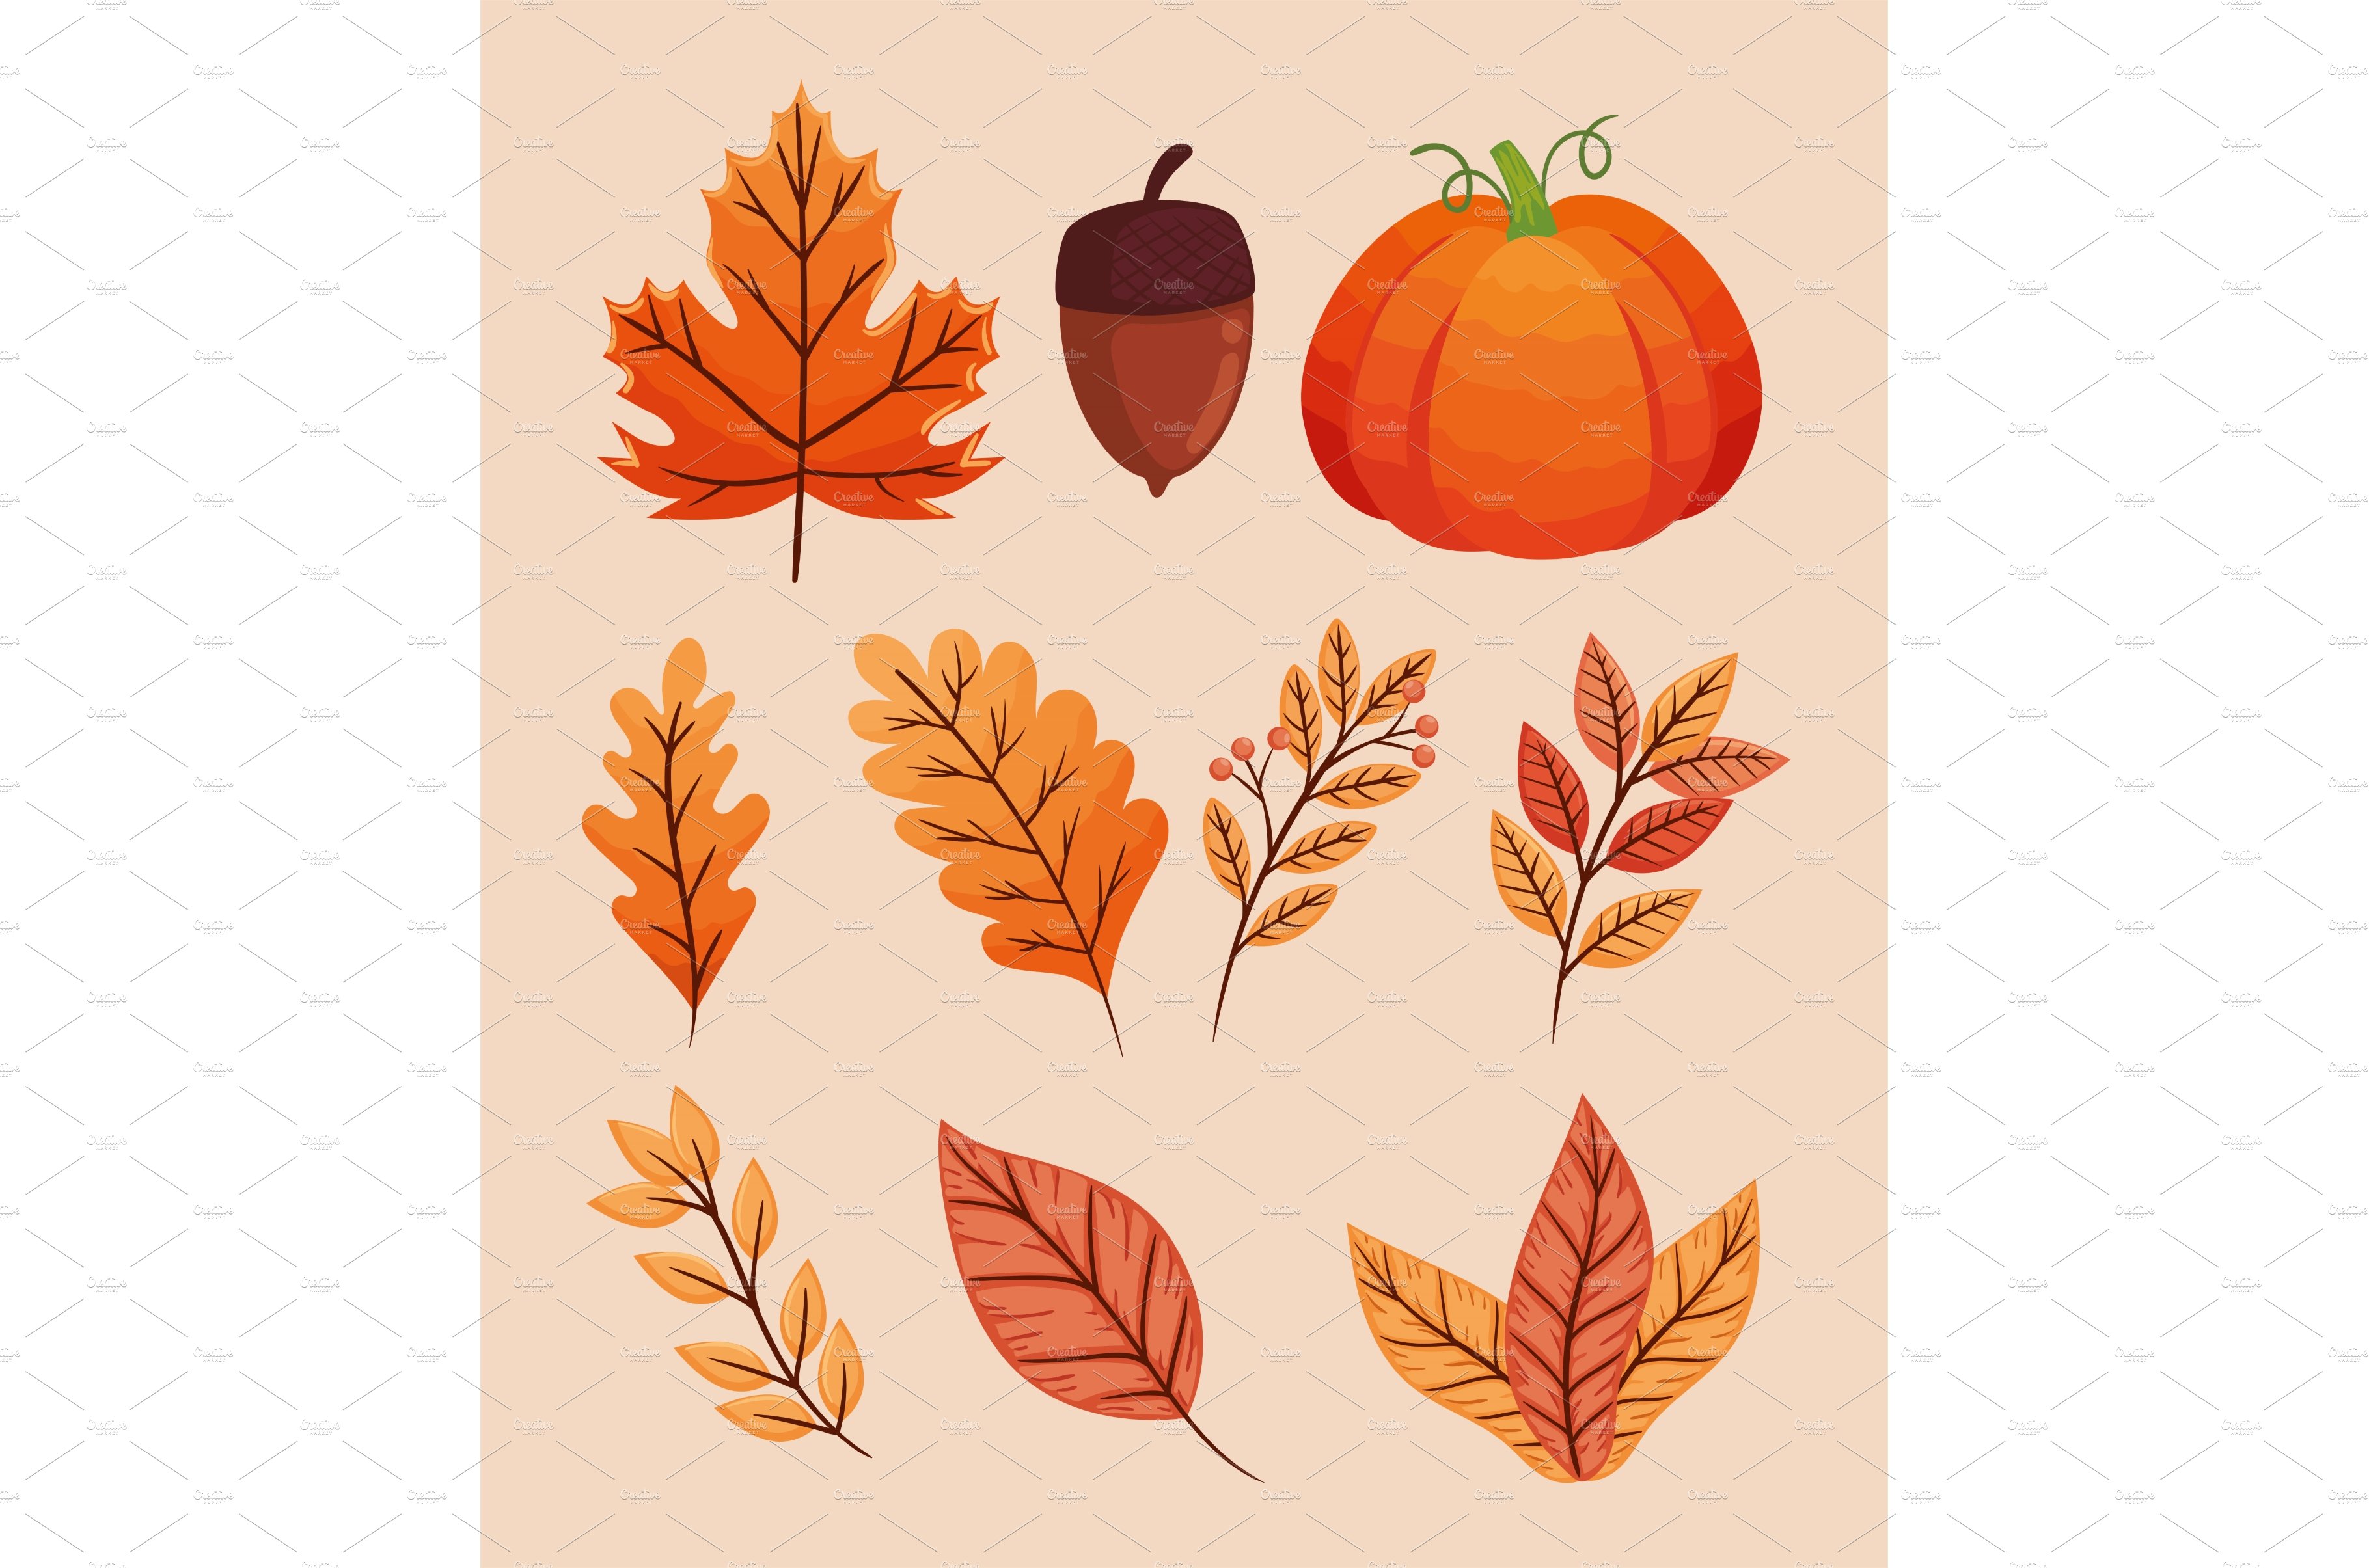 ten autumn season icons cover image.